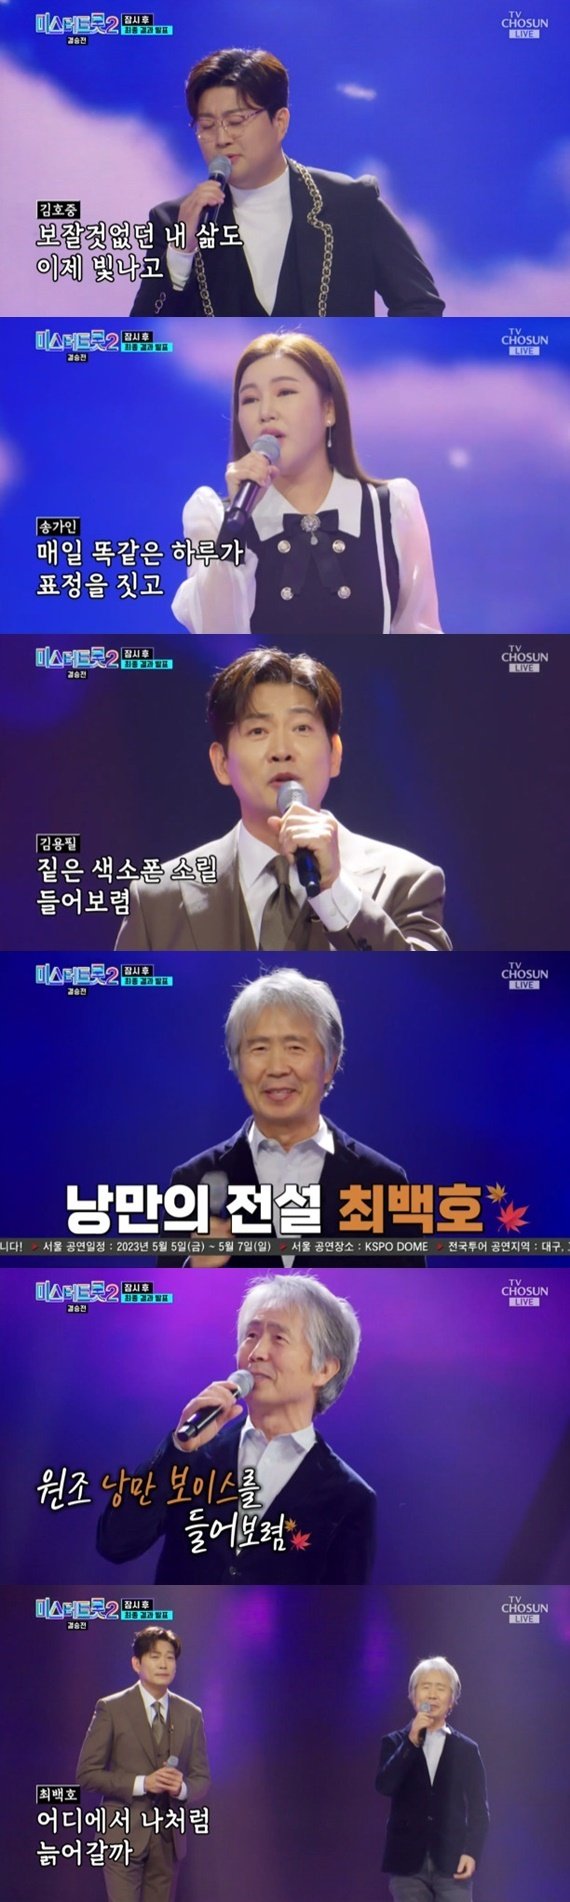 최백호·송가인·김호중·김용필, '미스터트롯2' 결승전 무대 출격